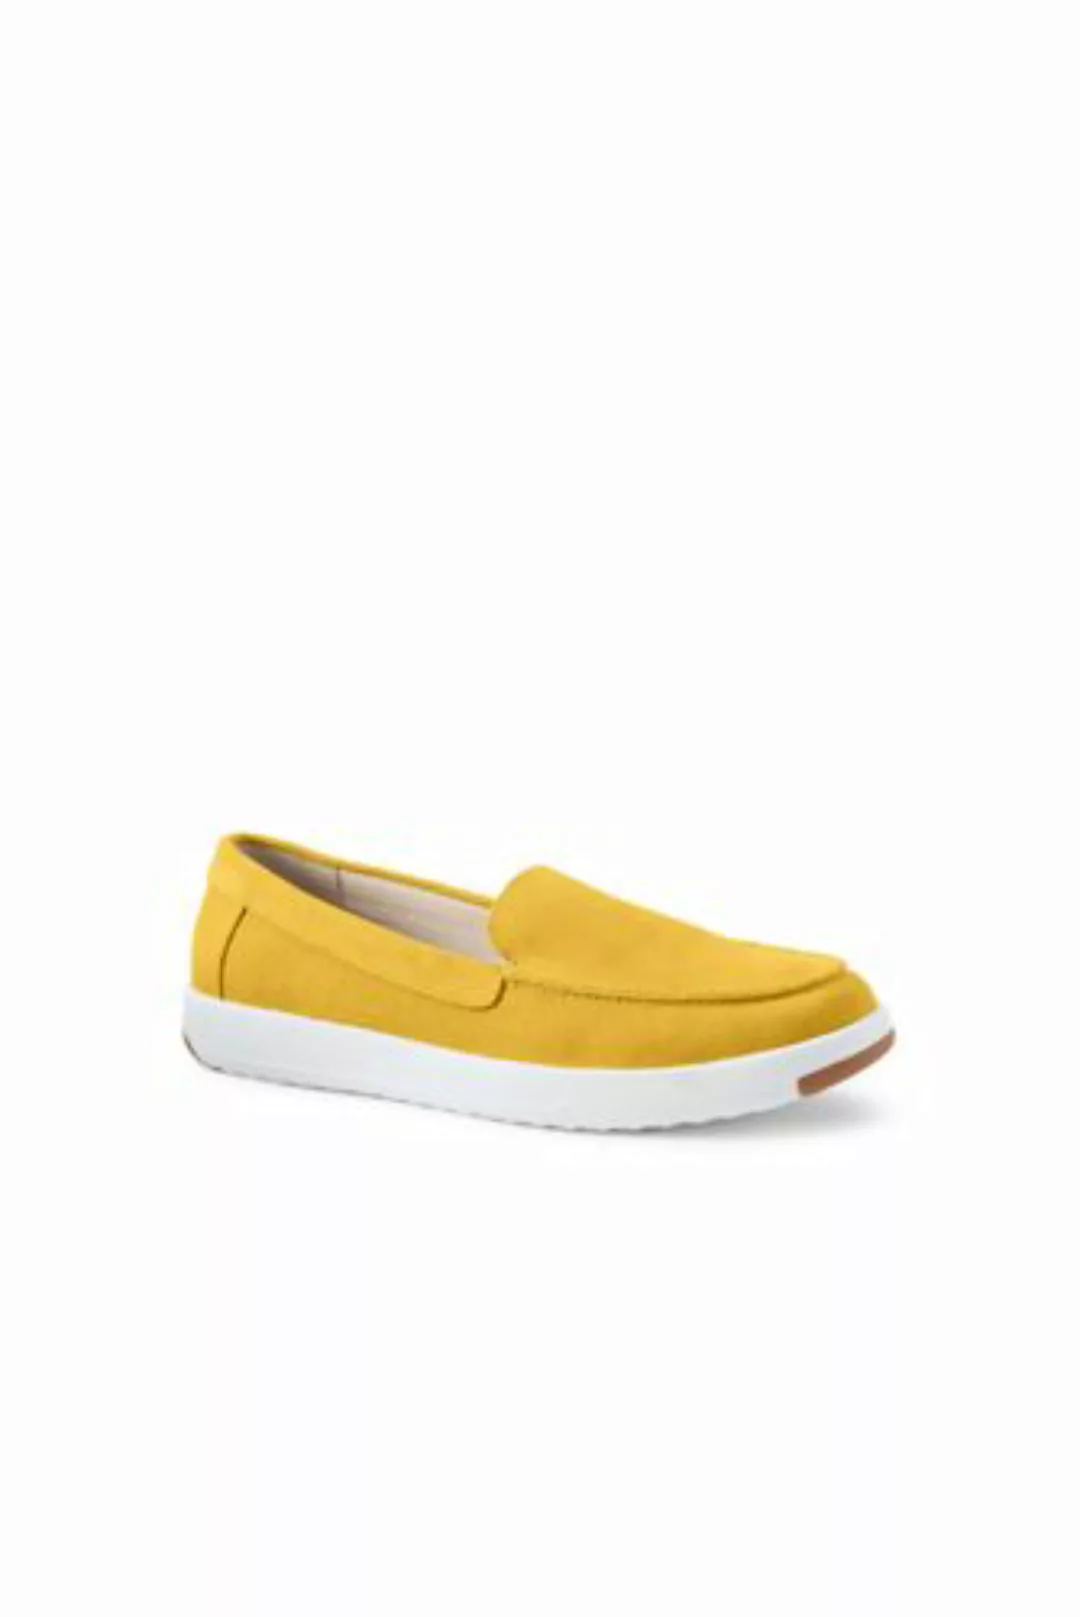 Federleichte Komfort-Loafer, Damen, Größe: 37.5 Normal, Gelb, Rauleder, by günstig online kaufen